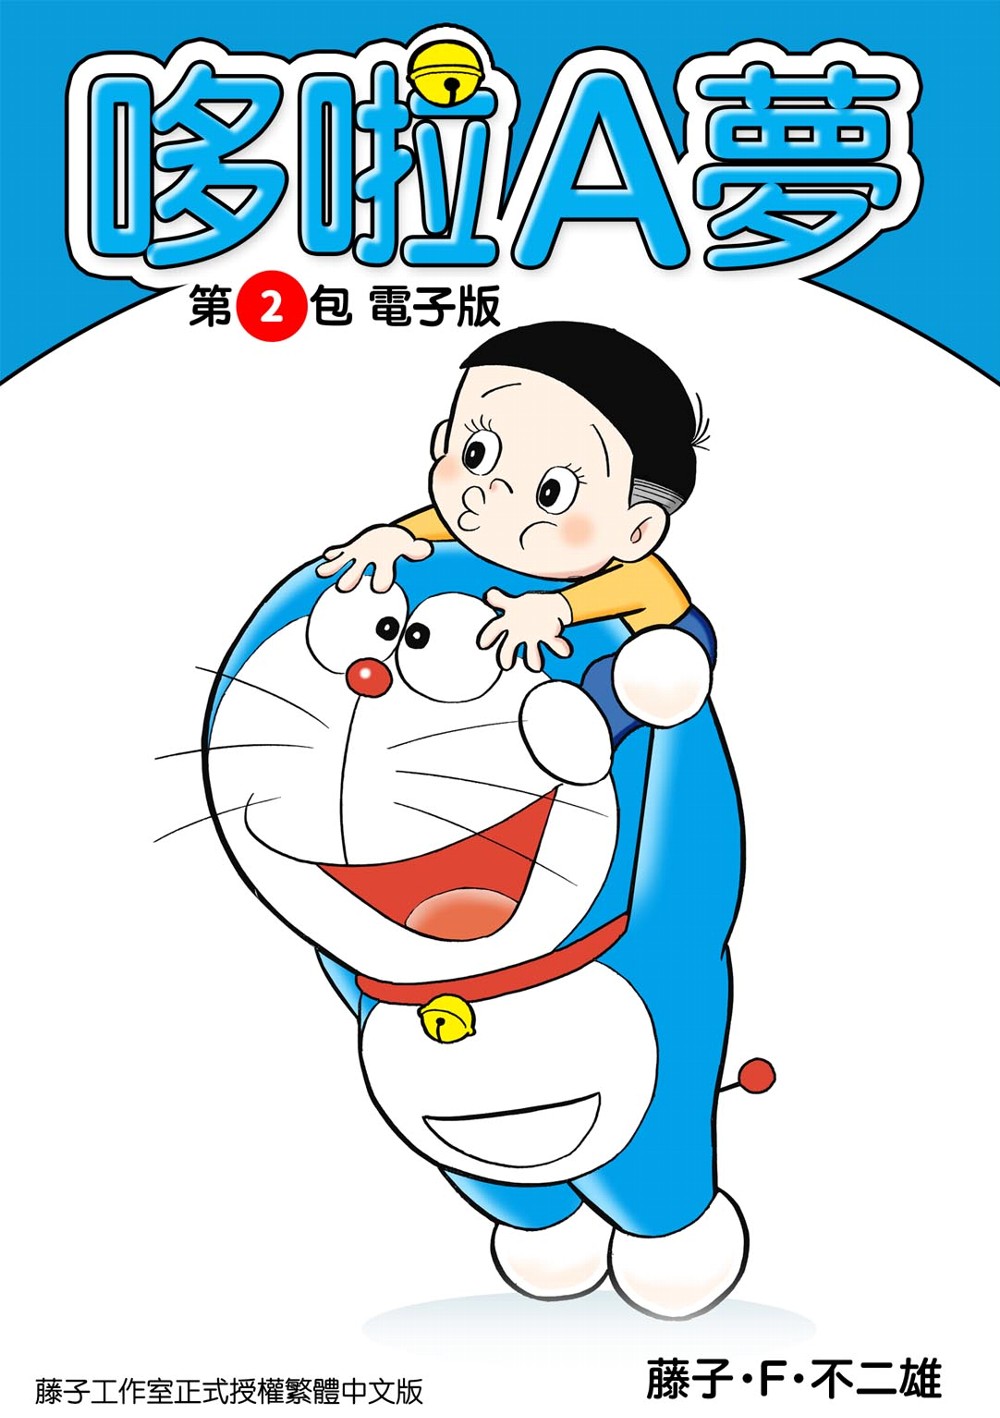 哆啦A夢 第2包 電子版 (電子書)